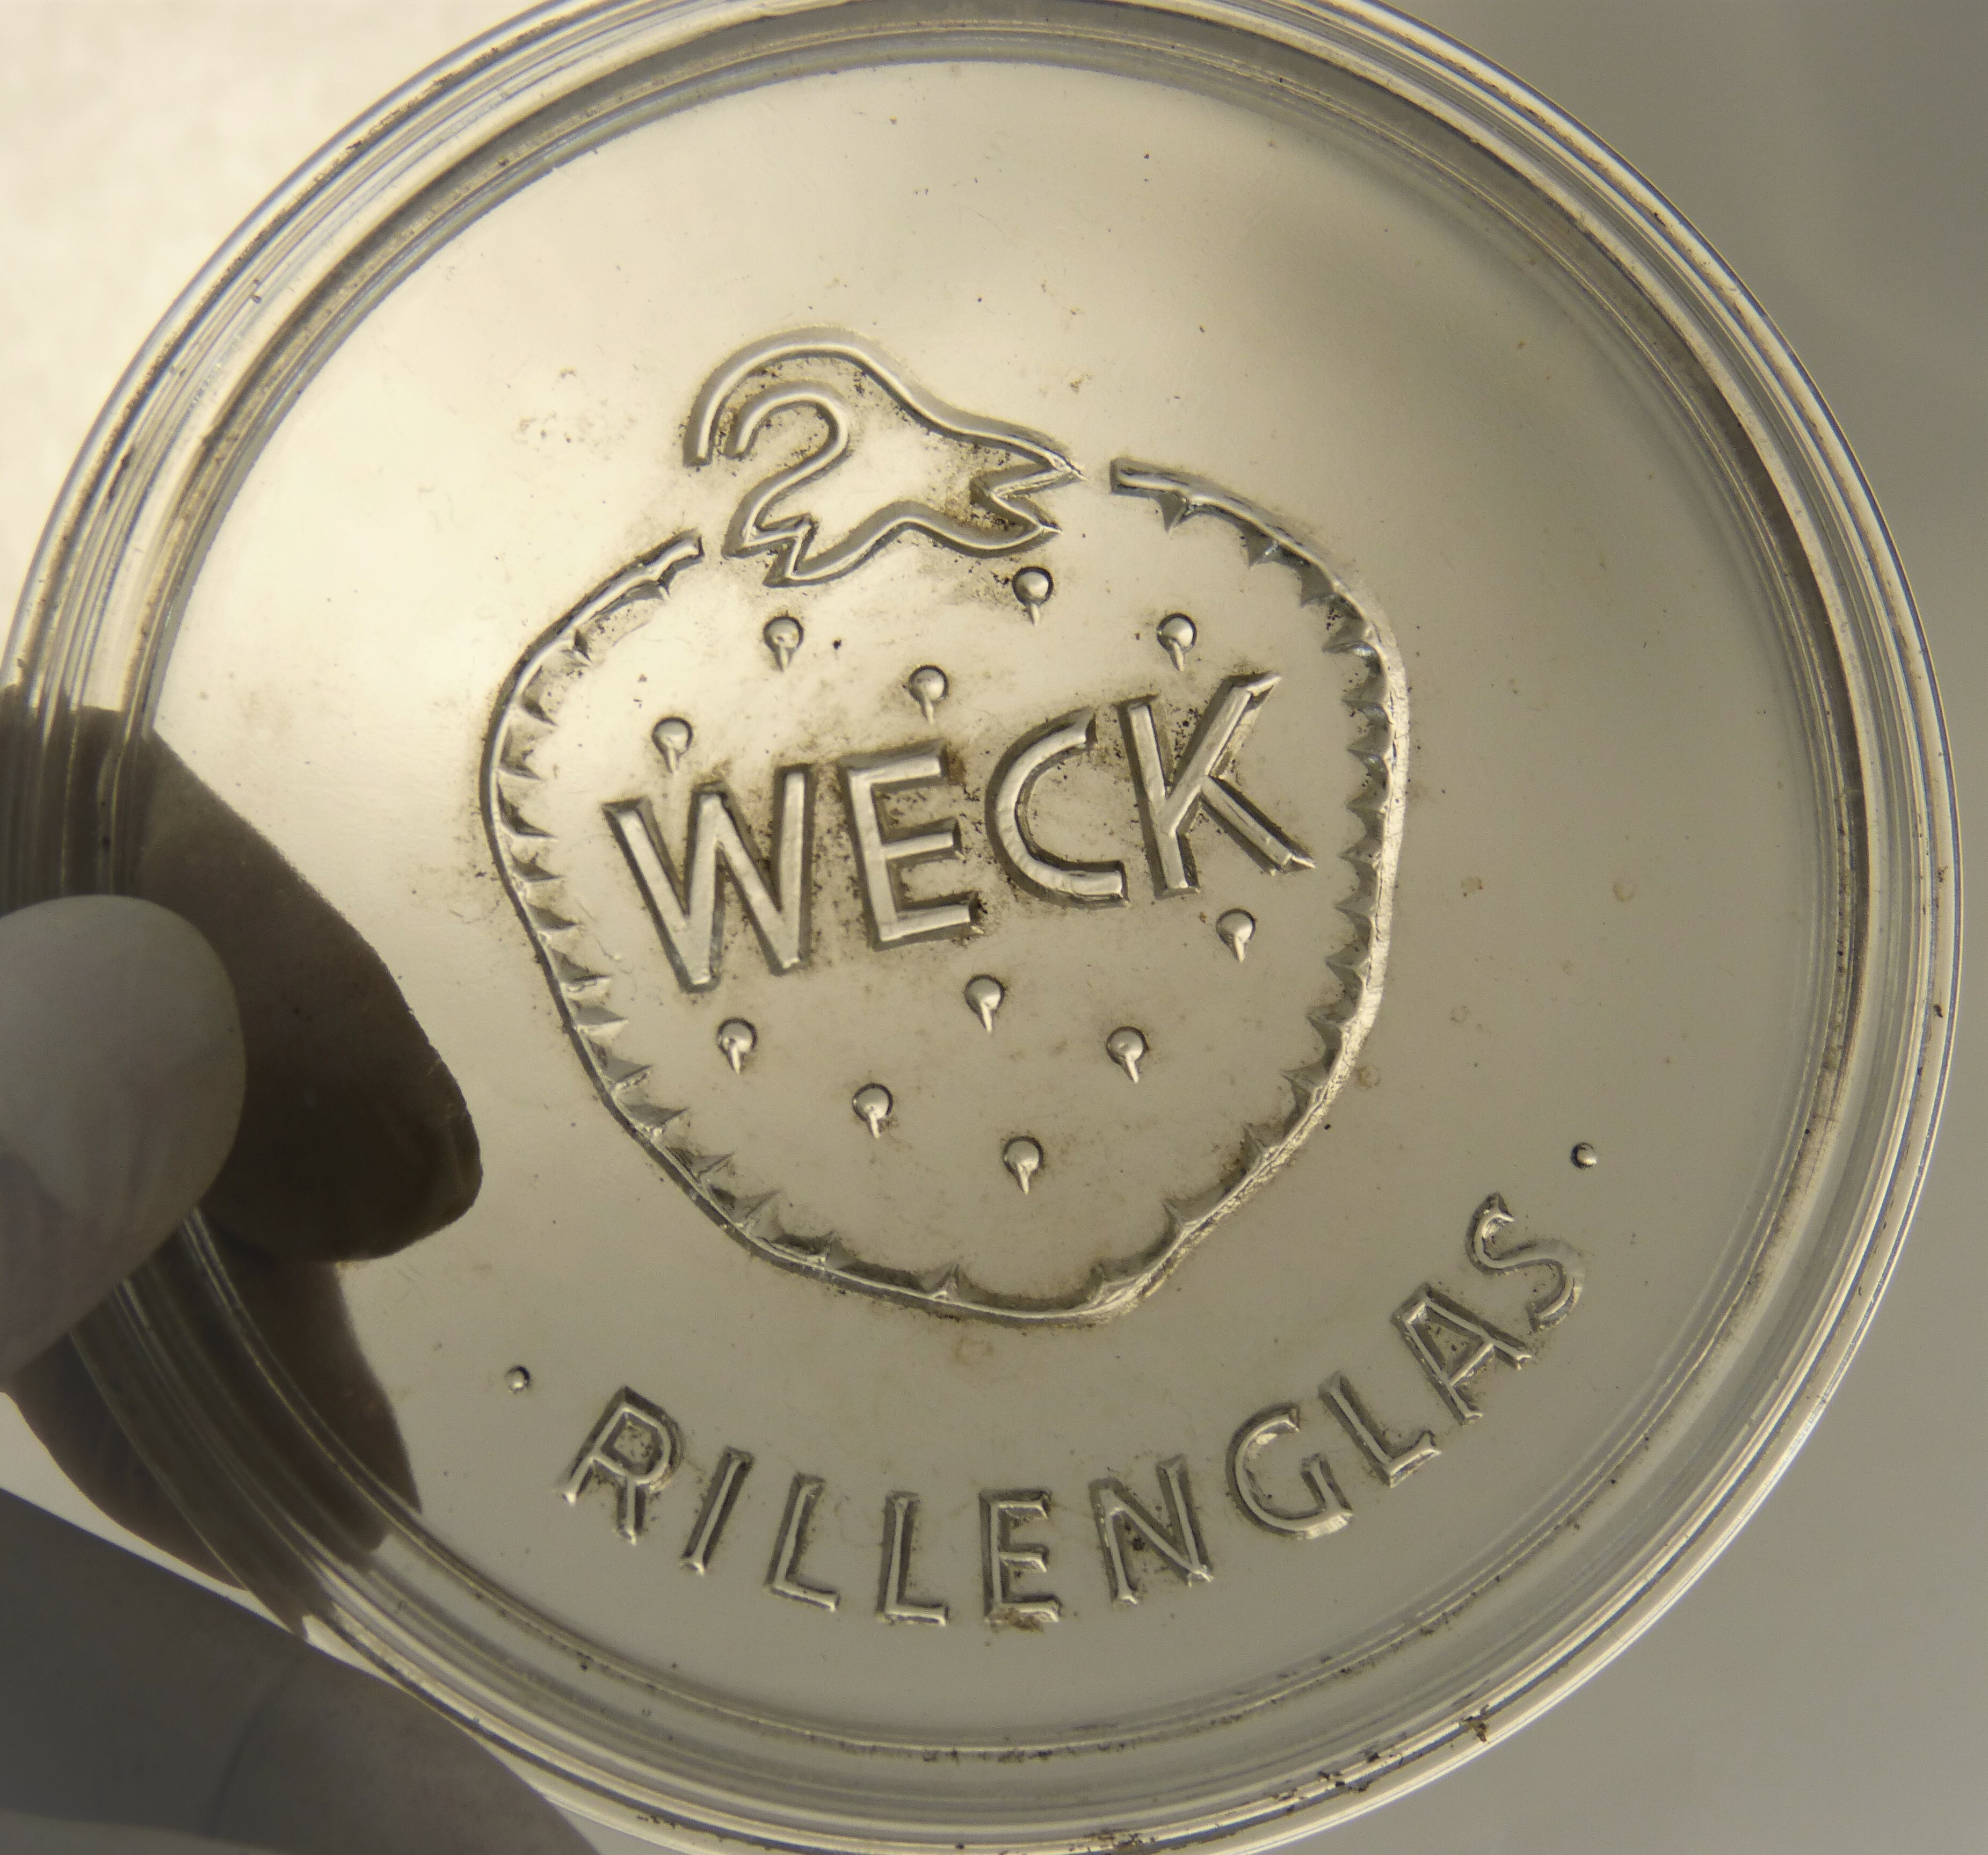 Einmachglas von der Marke "Weck" (Städt. Hellweg-Museum Geseke CC BY-NC-SA)